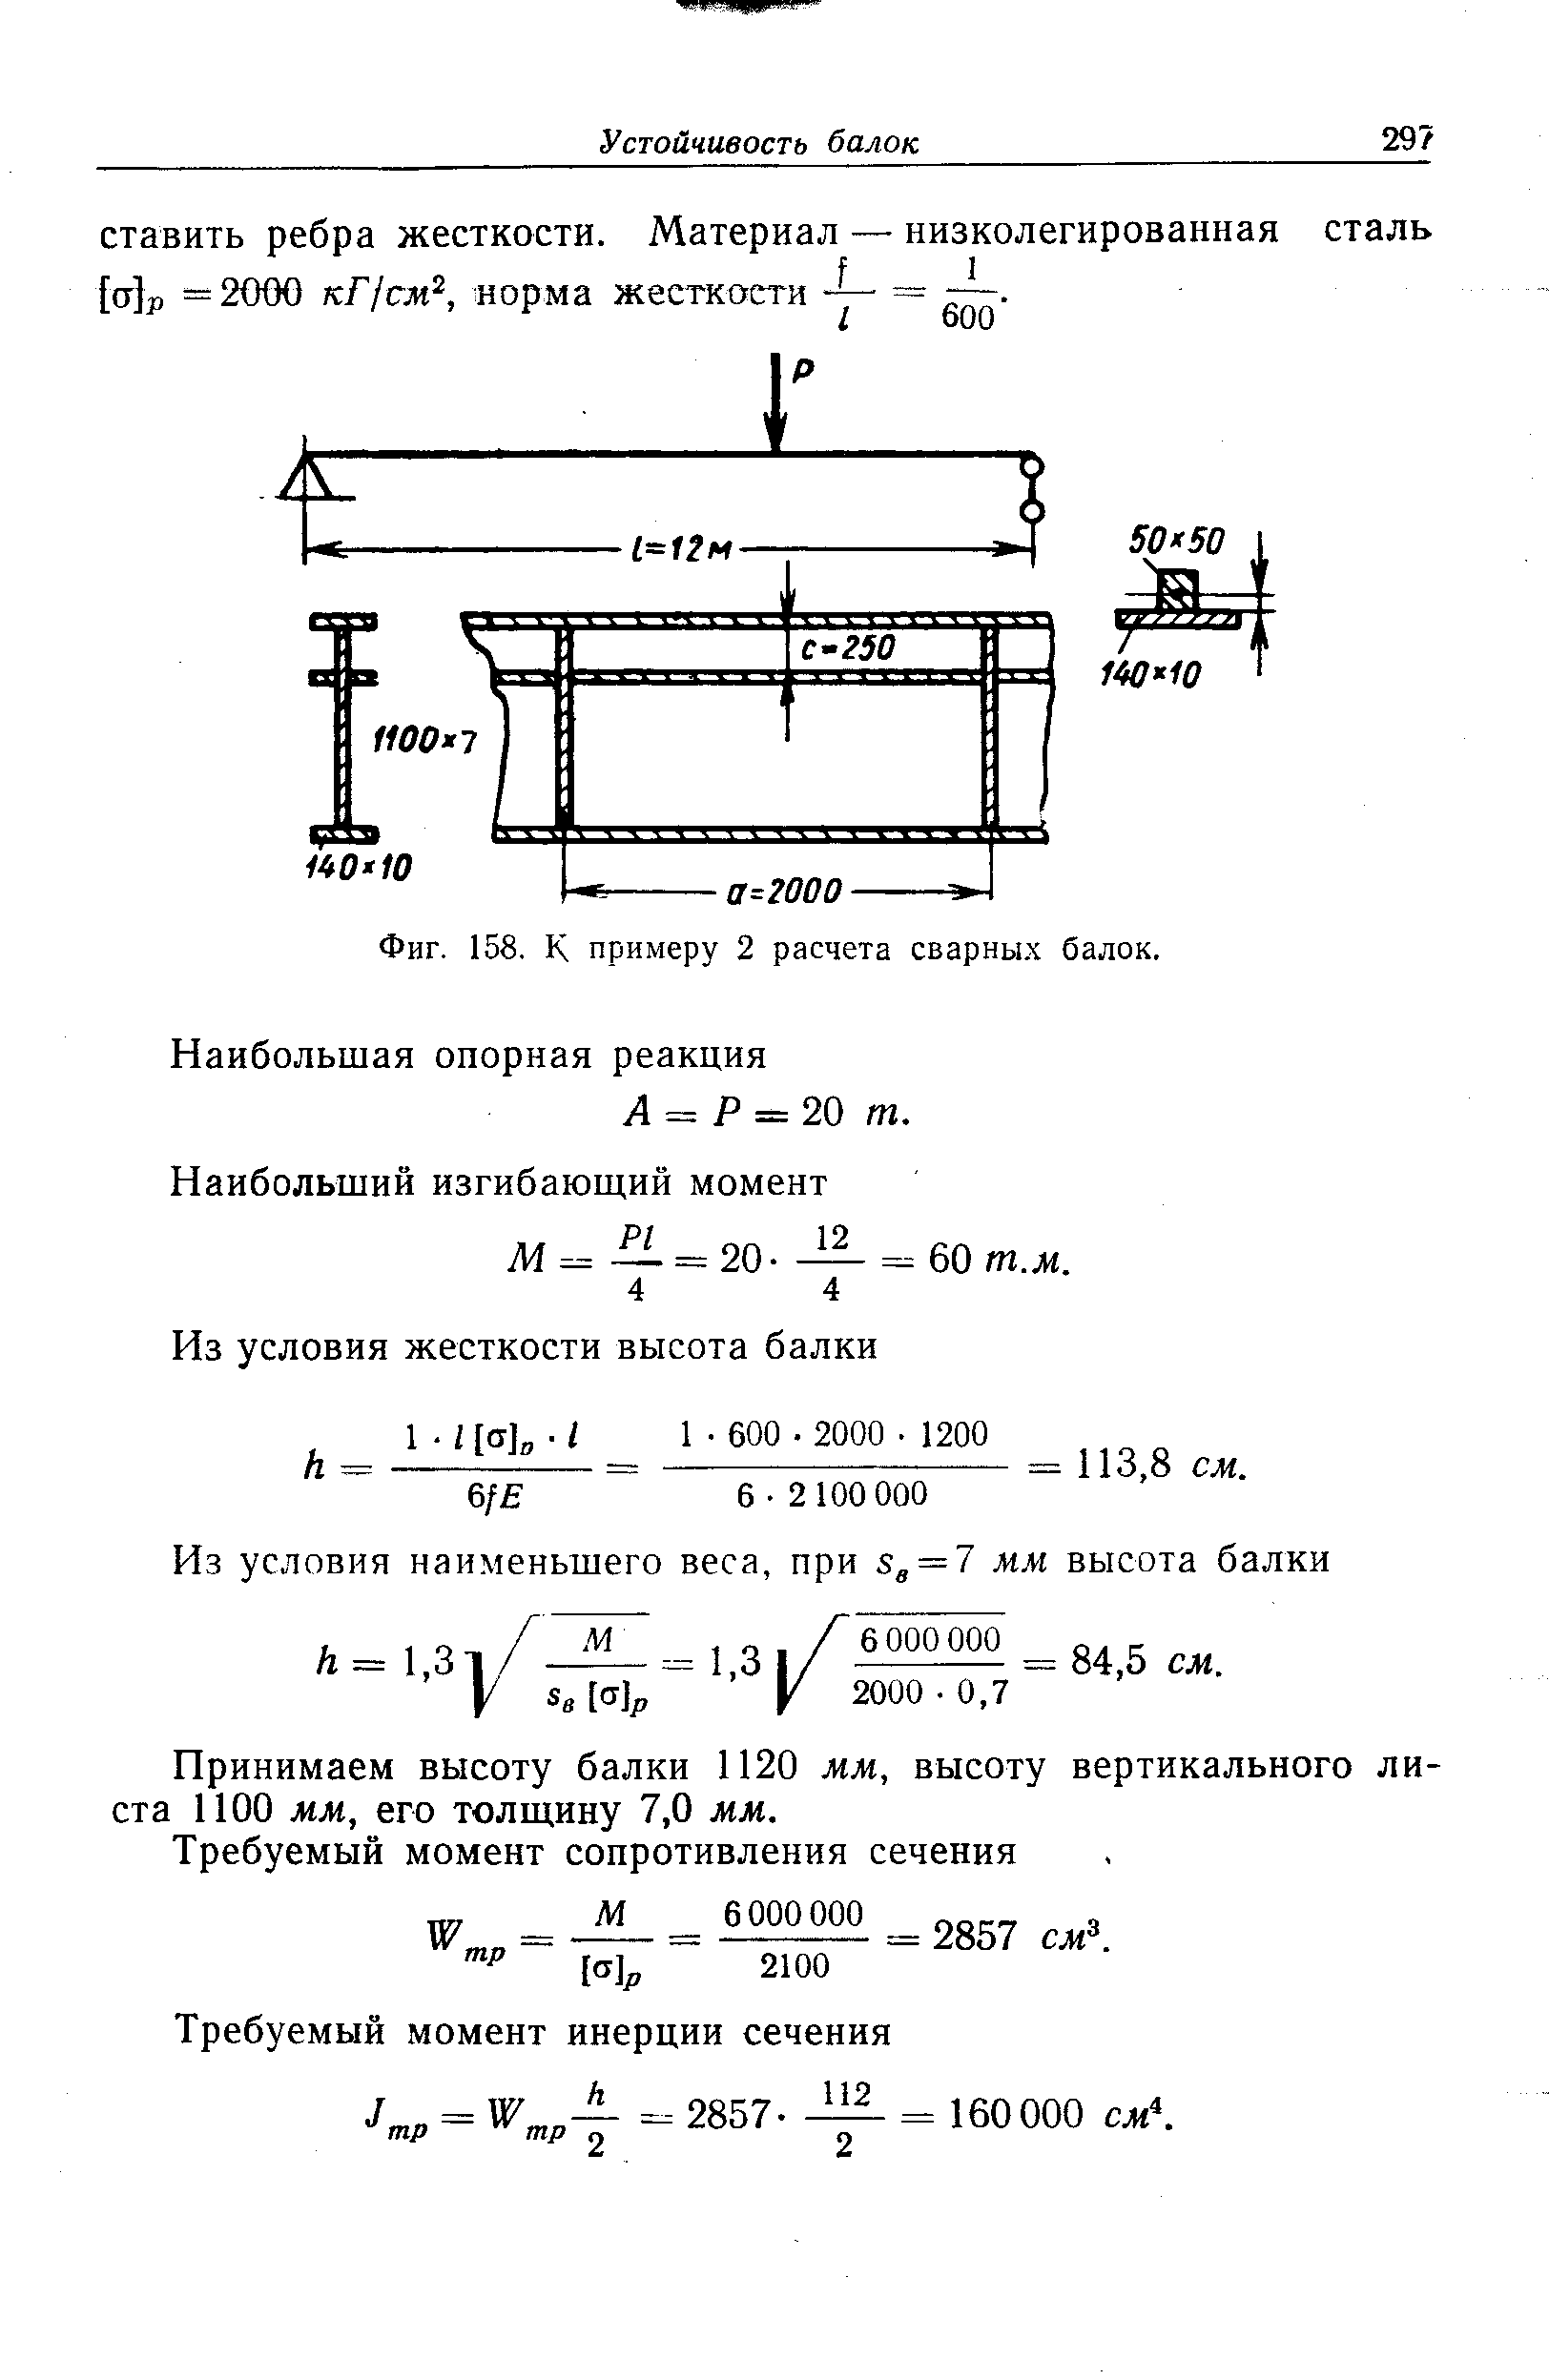 статический момент инерции двутавра